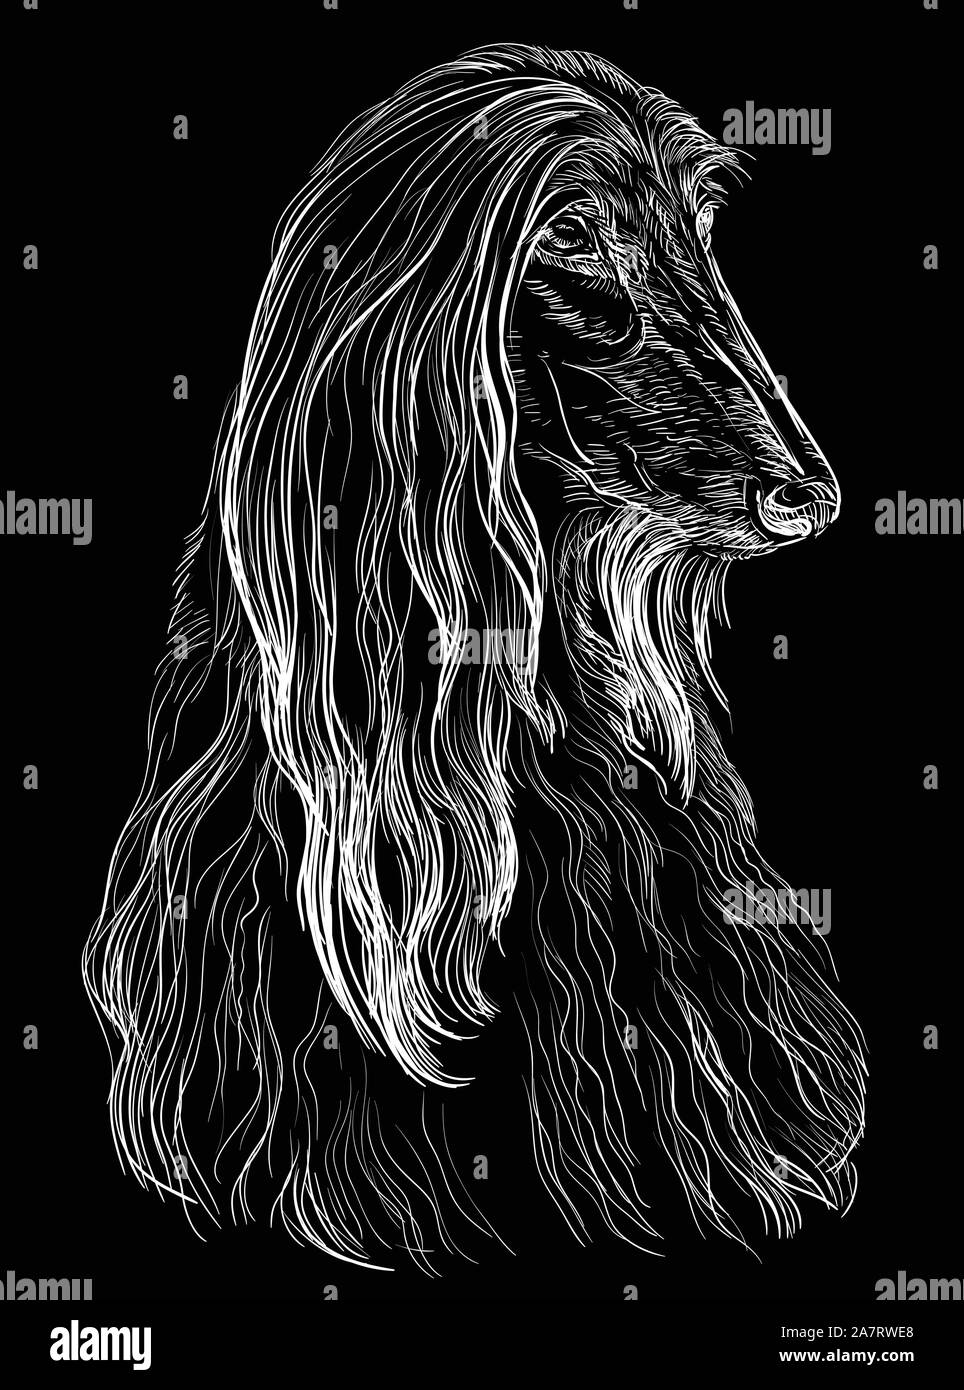 Dibujo a lápiz blanco y negro fotografías e imágenes de alta resolución -  Alamy